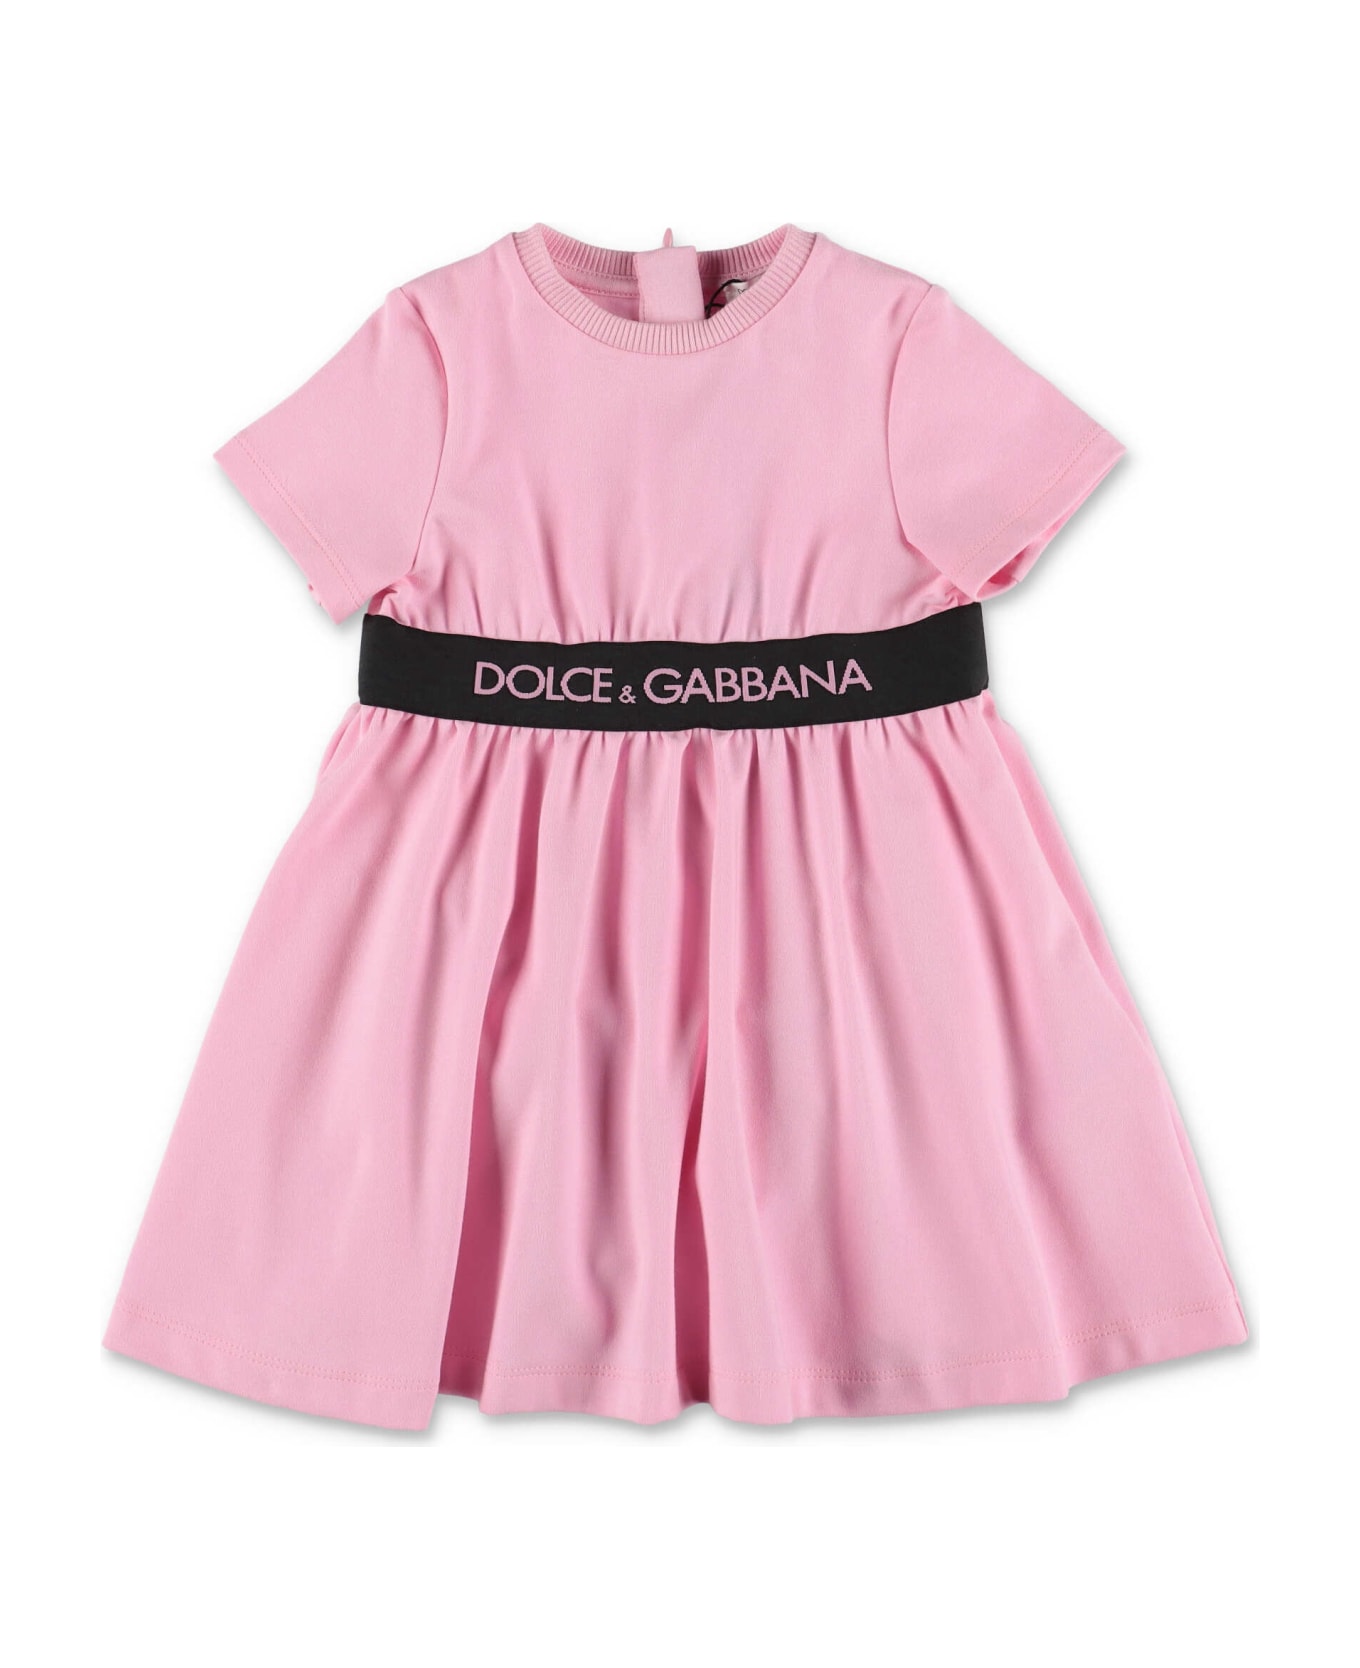 Dolce pendant & Gabbana Abito E Coulotte Rosa In Jersey Di Cotone Baby Girl - Rosa